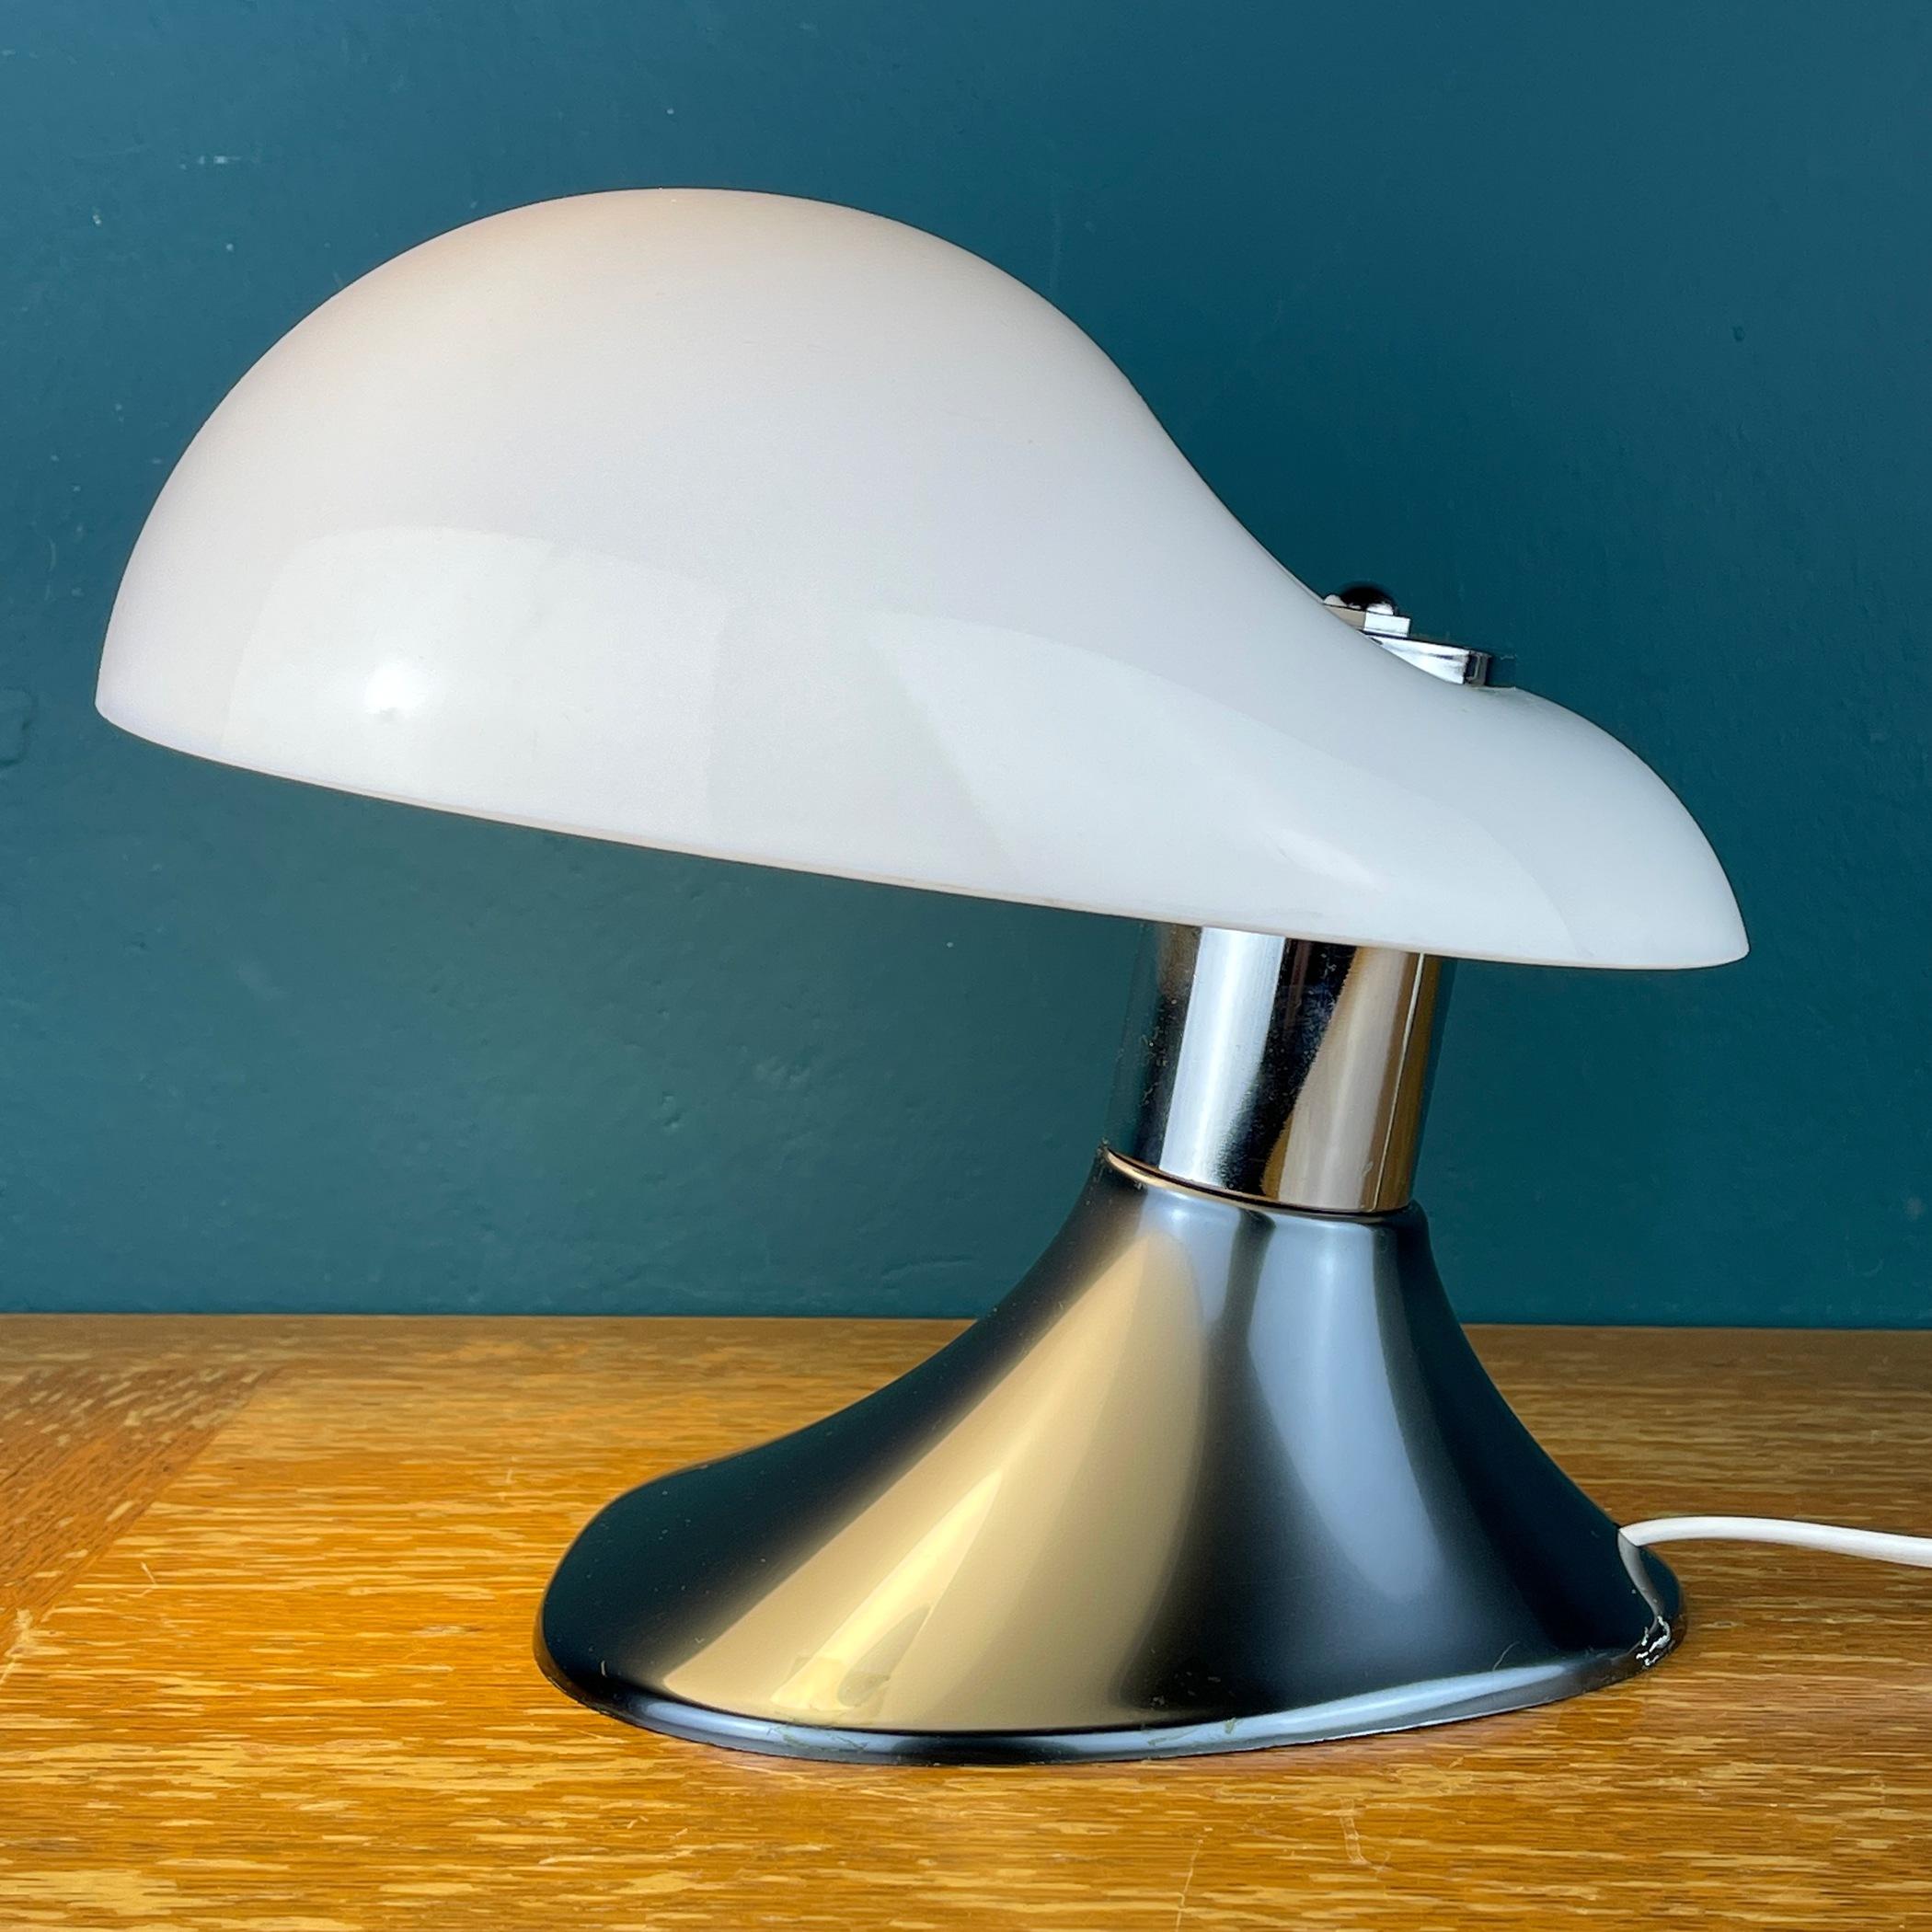 La magnifique lampe de table Cobra conçue par Harvey Guzzini et fabriquée par Guzzini en Italie vers 1960. La pièce est fabriquée en plexiglas, un matériau emblématique du style de Guzzini qui représente parfaitement le design italien du milieu du